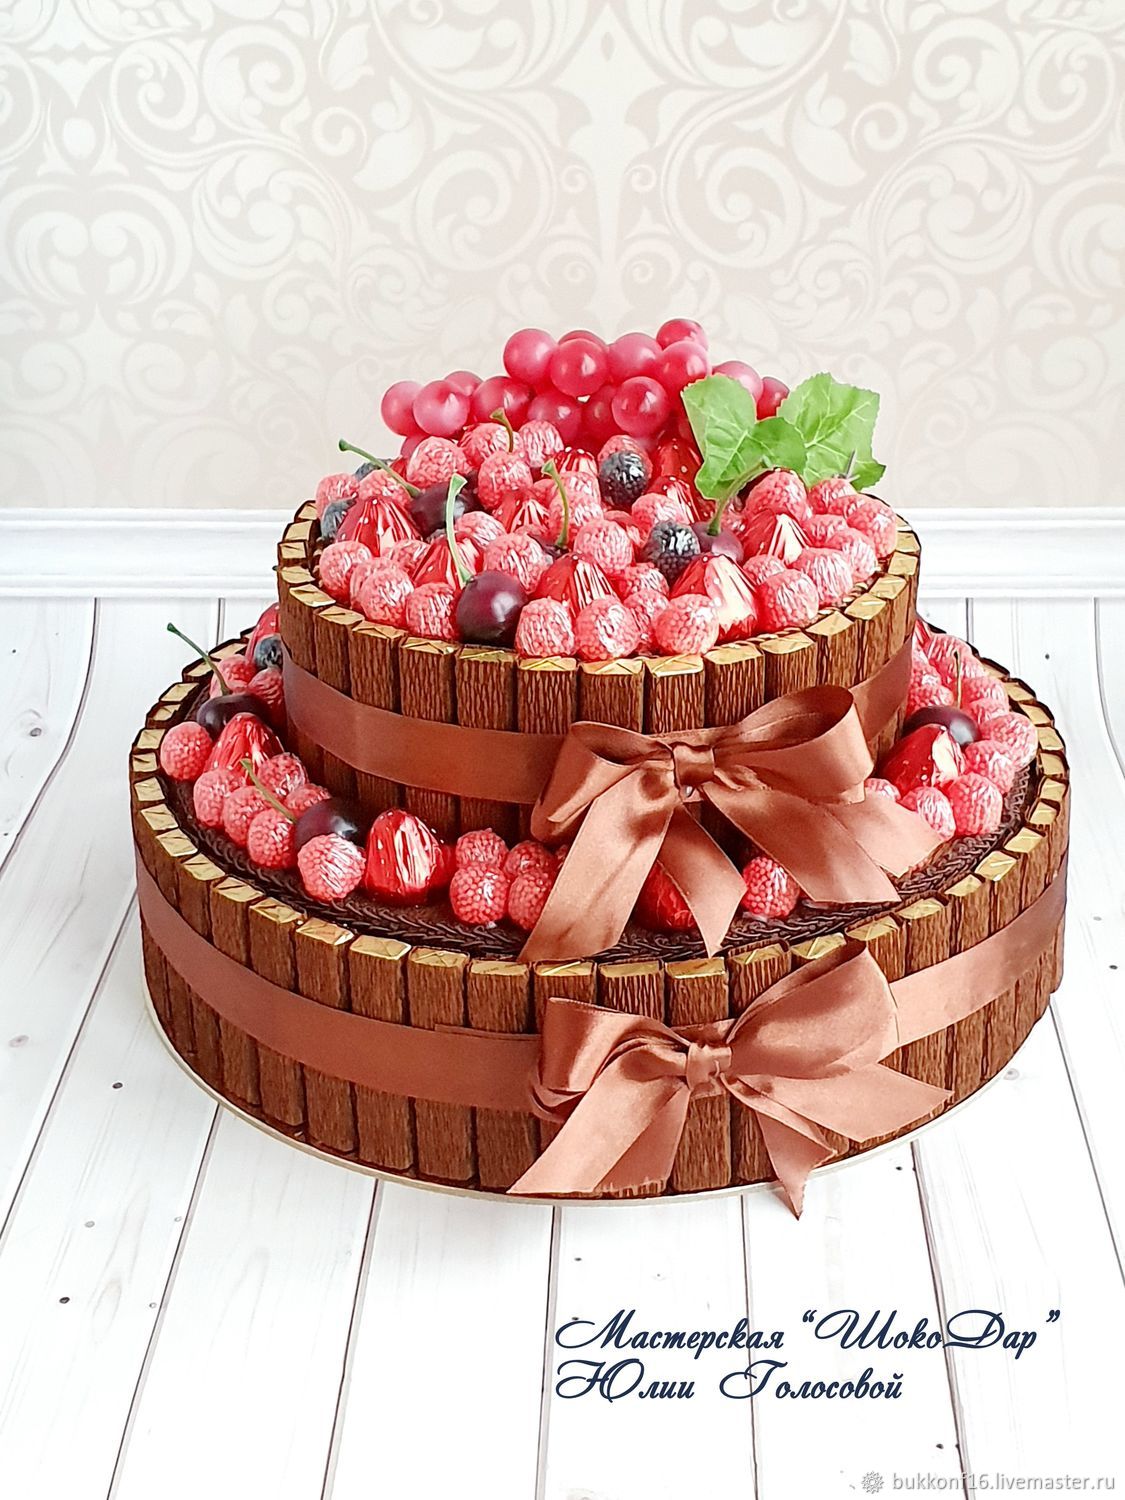 Купить торты из конфет недорого с доставкой по Москве от компании Лакрес.